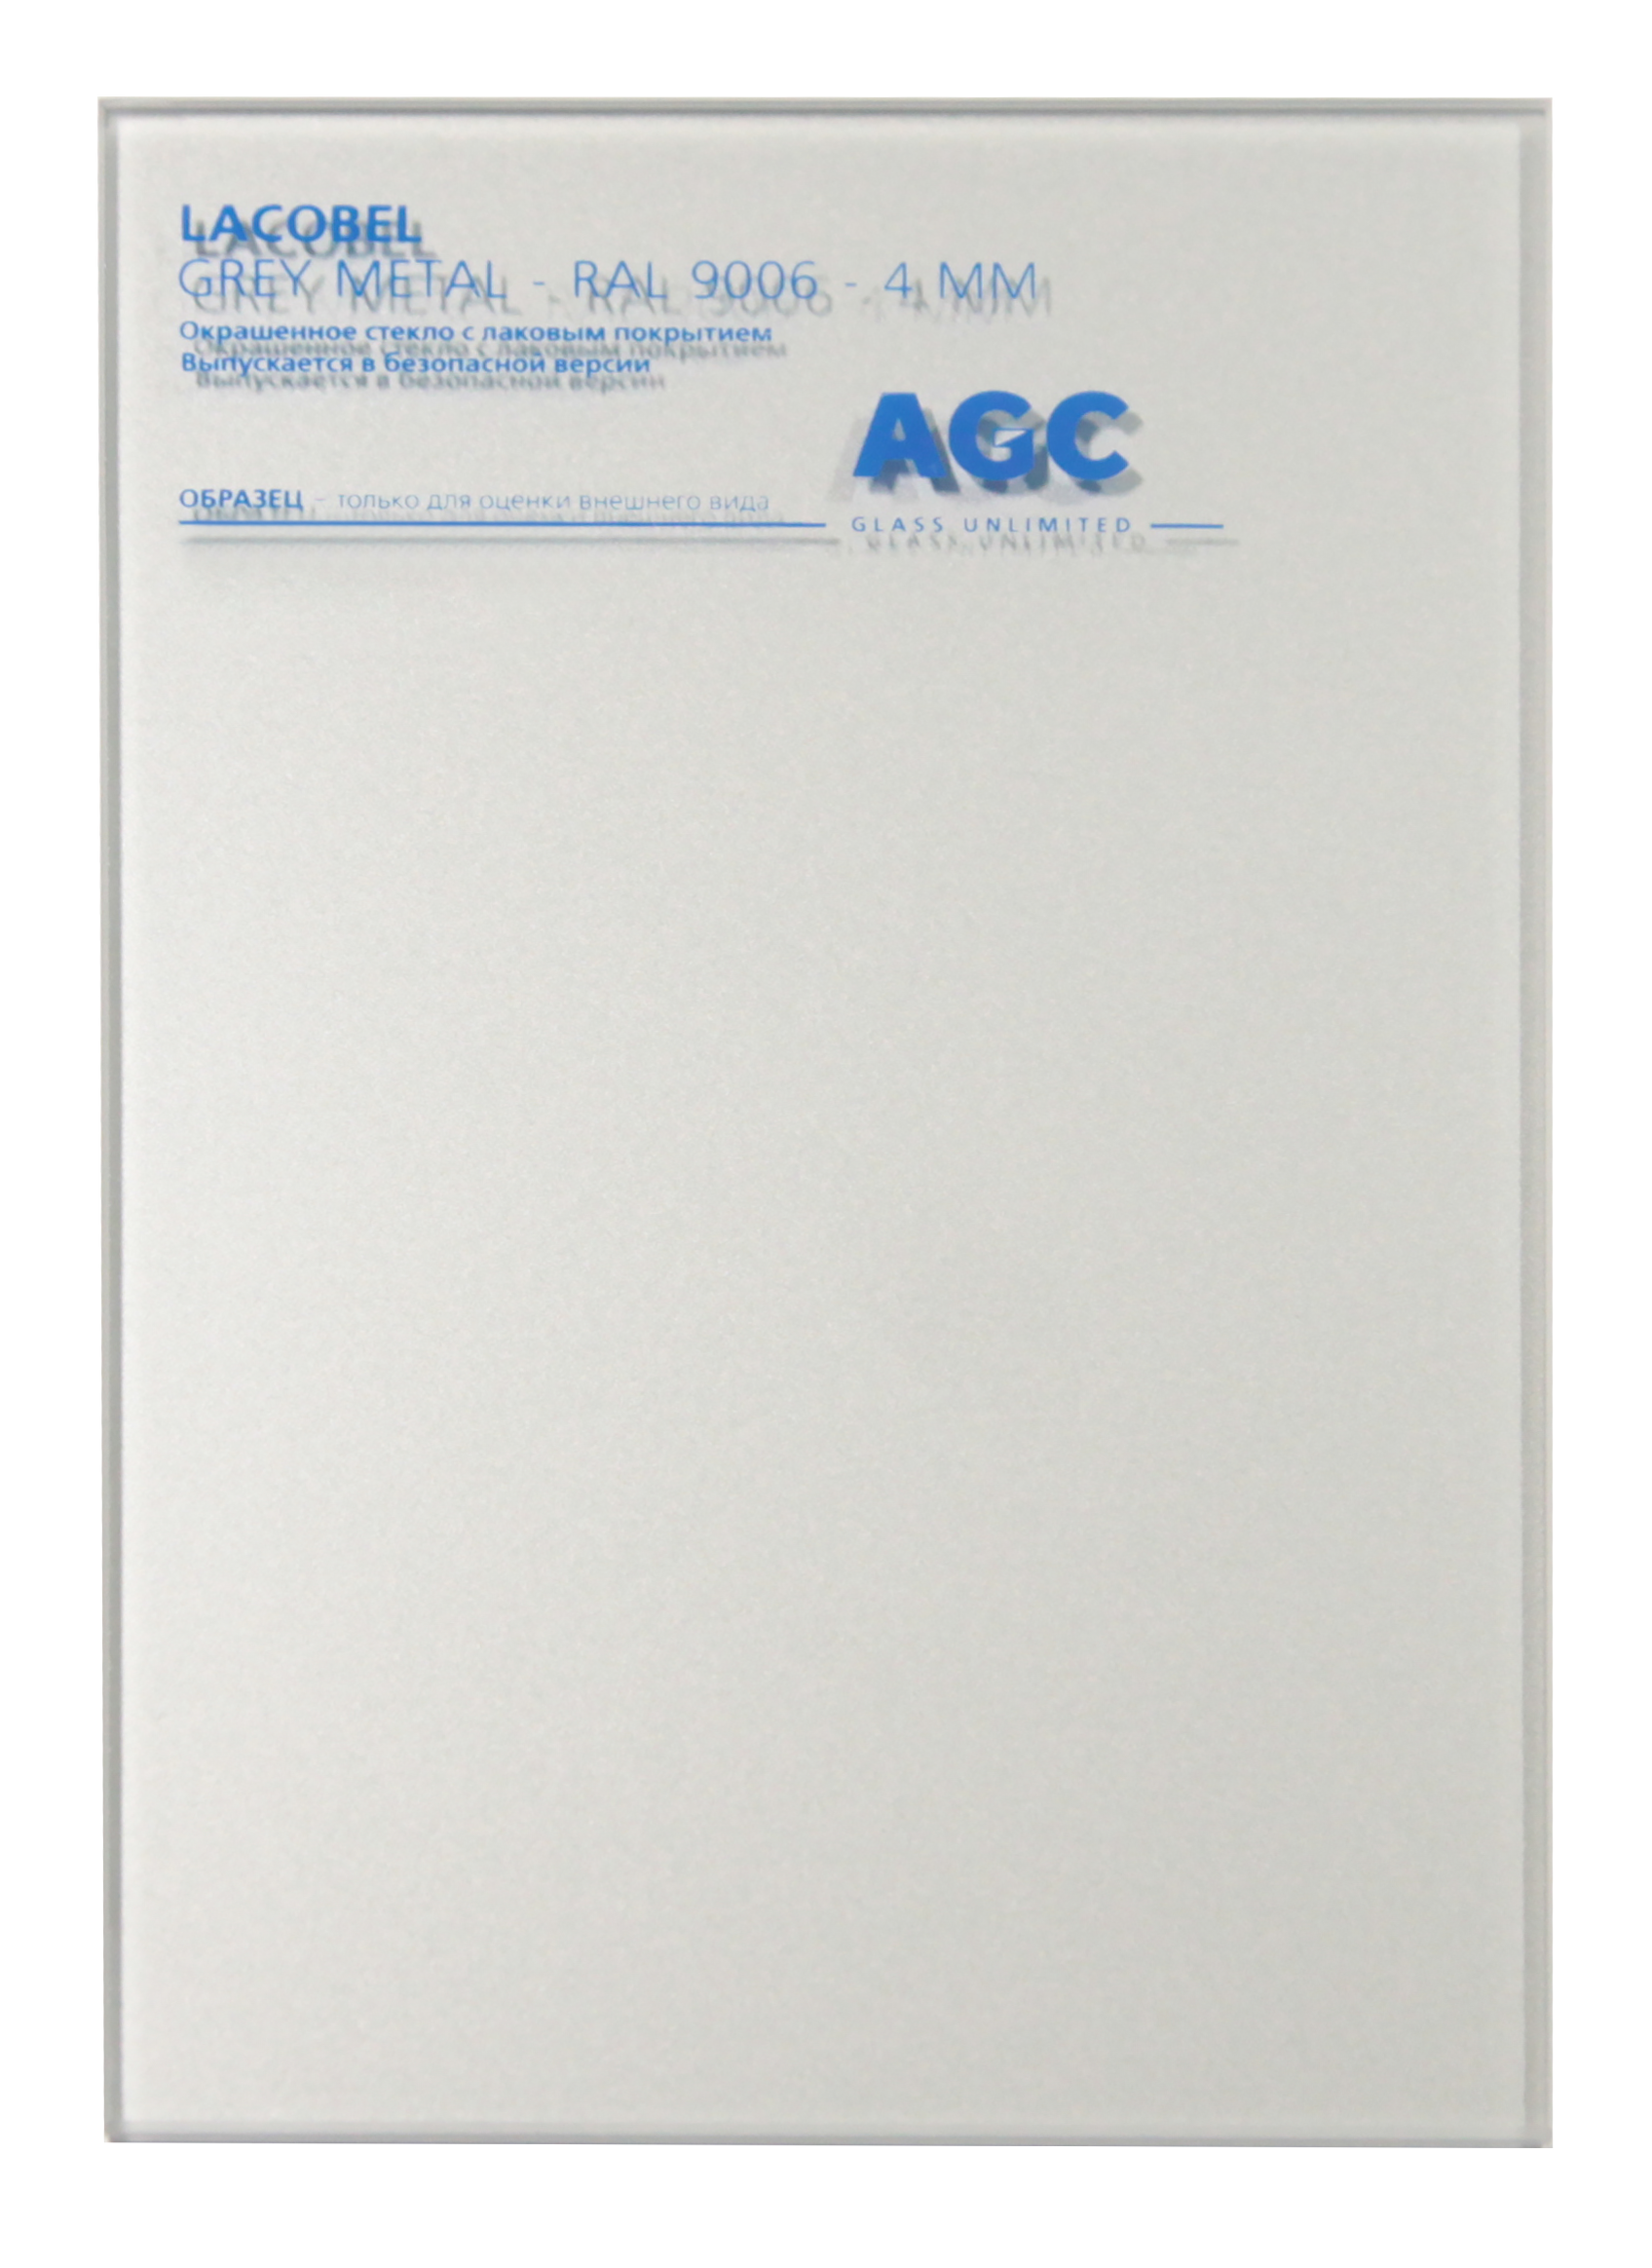 3062646 - AGC cтекло LACOBEL RAL9006 Grey Metal 2550*1605*4мм